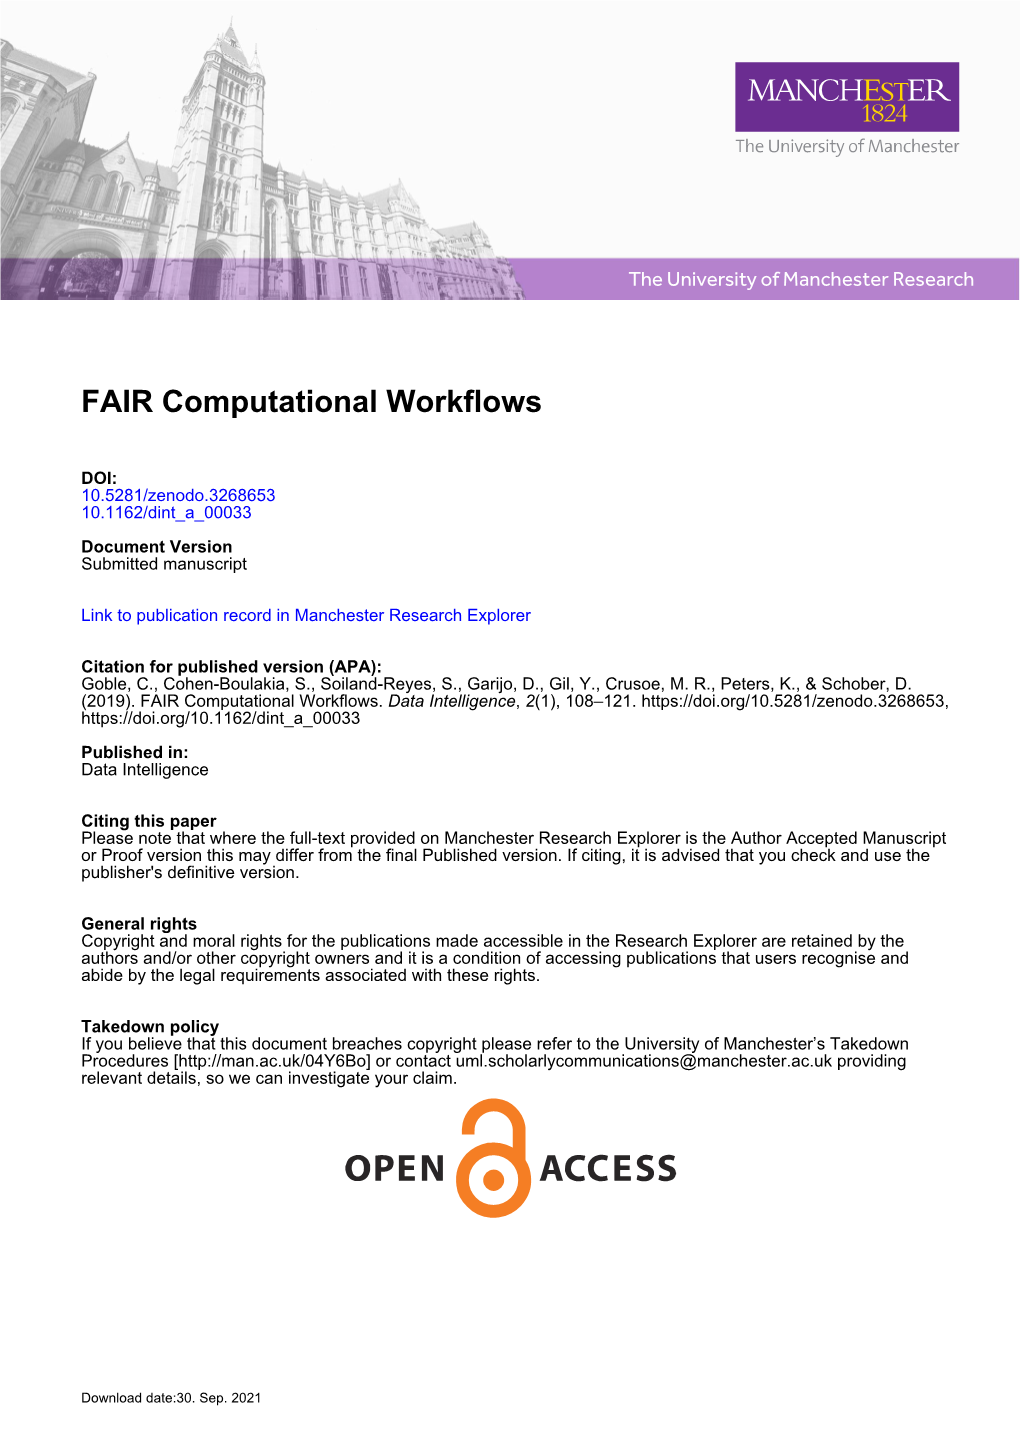 FAIR Computational Workflows-Preprint-20190416